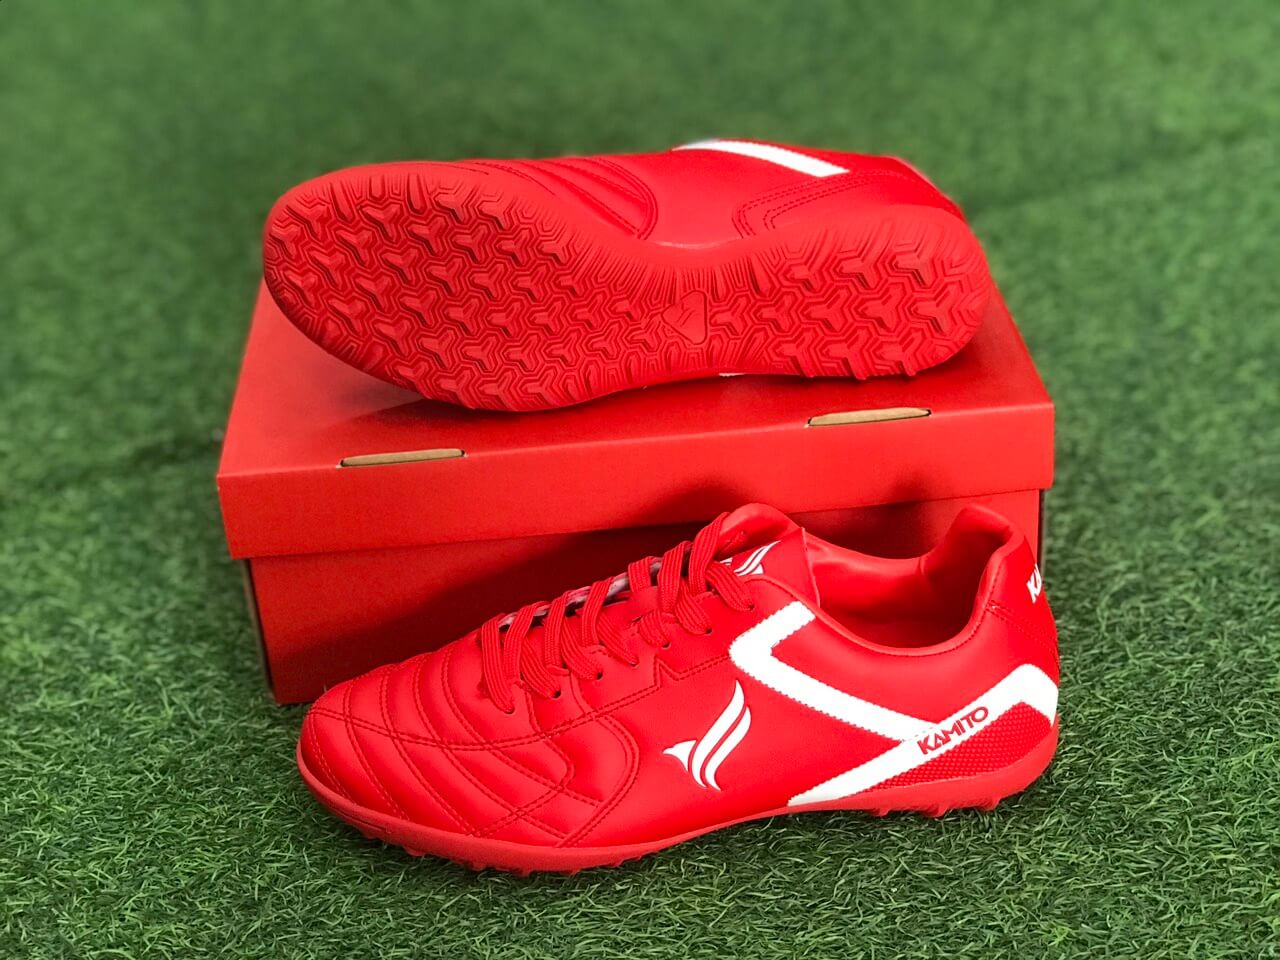 Giày bóng đá kamito velocidad 2019